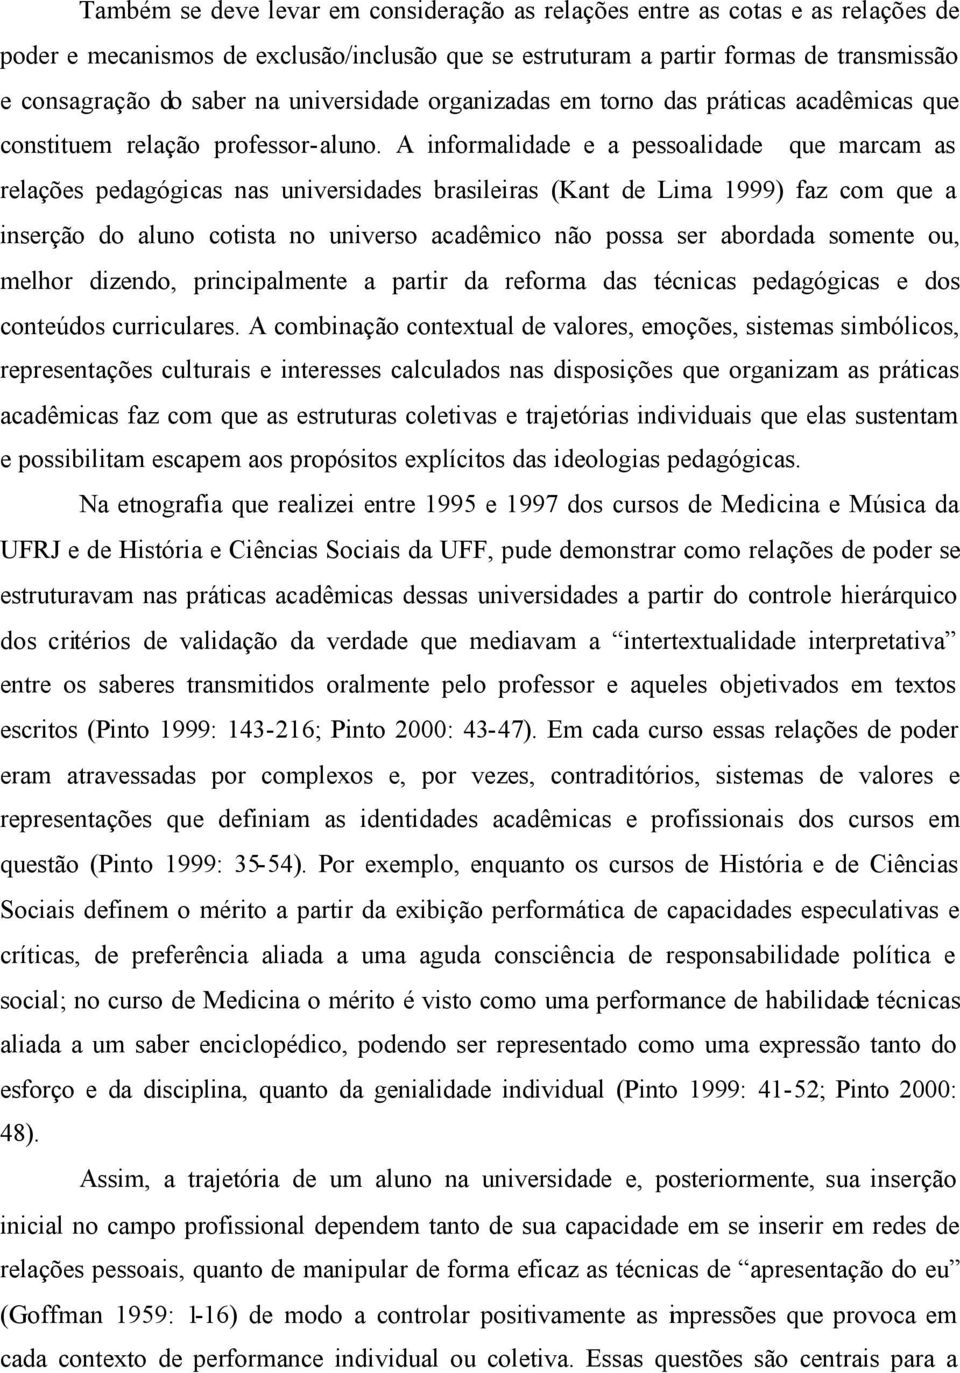 A informalidade e a pessoalidade que marcam as relações pedagógicas nas universidades brasileiras (Kant de Lima 1999) faz com que a inserção do aluno cotista no universo acadêmico não possa ser